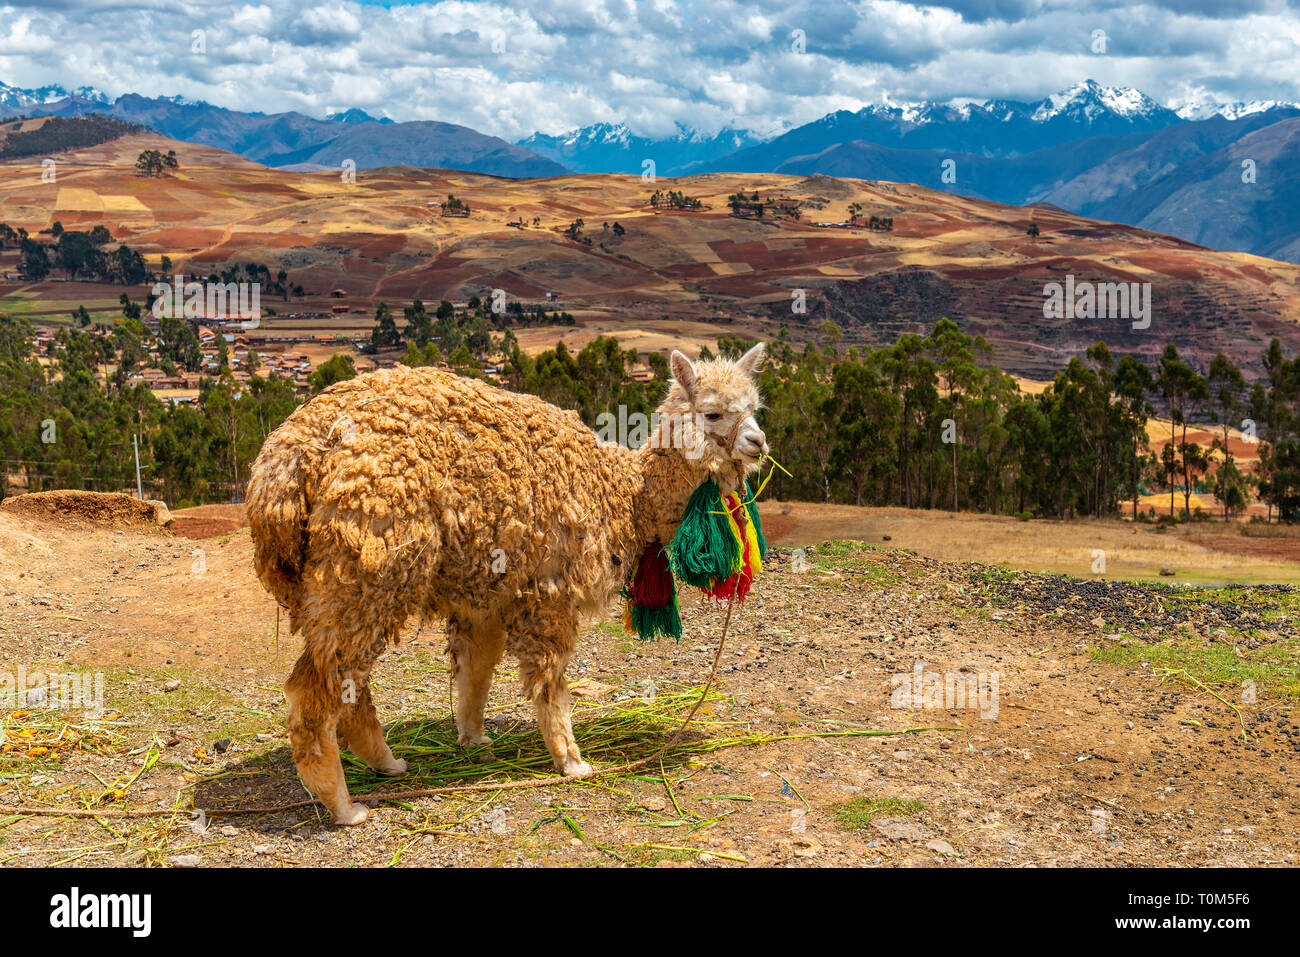 Ritratto di un llama (lama glama) nella Valle Sacra degli Inca con la cordigliera delle Ande in background, Provincia di Cusco, Perù. Foto Stock